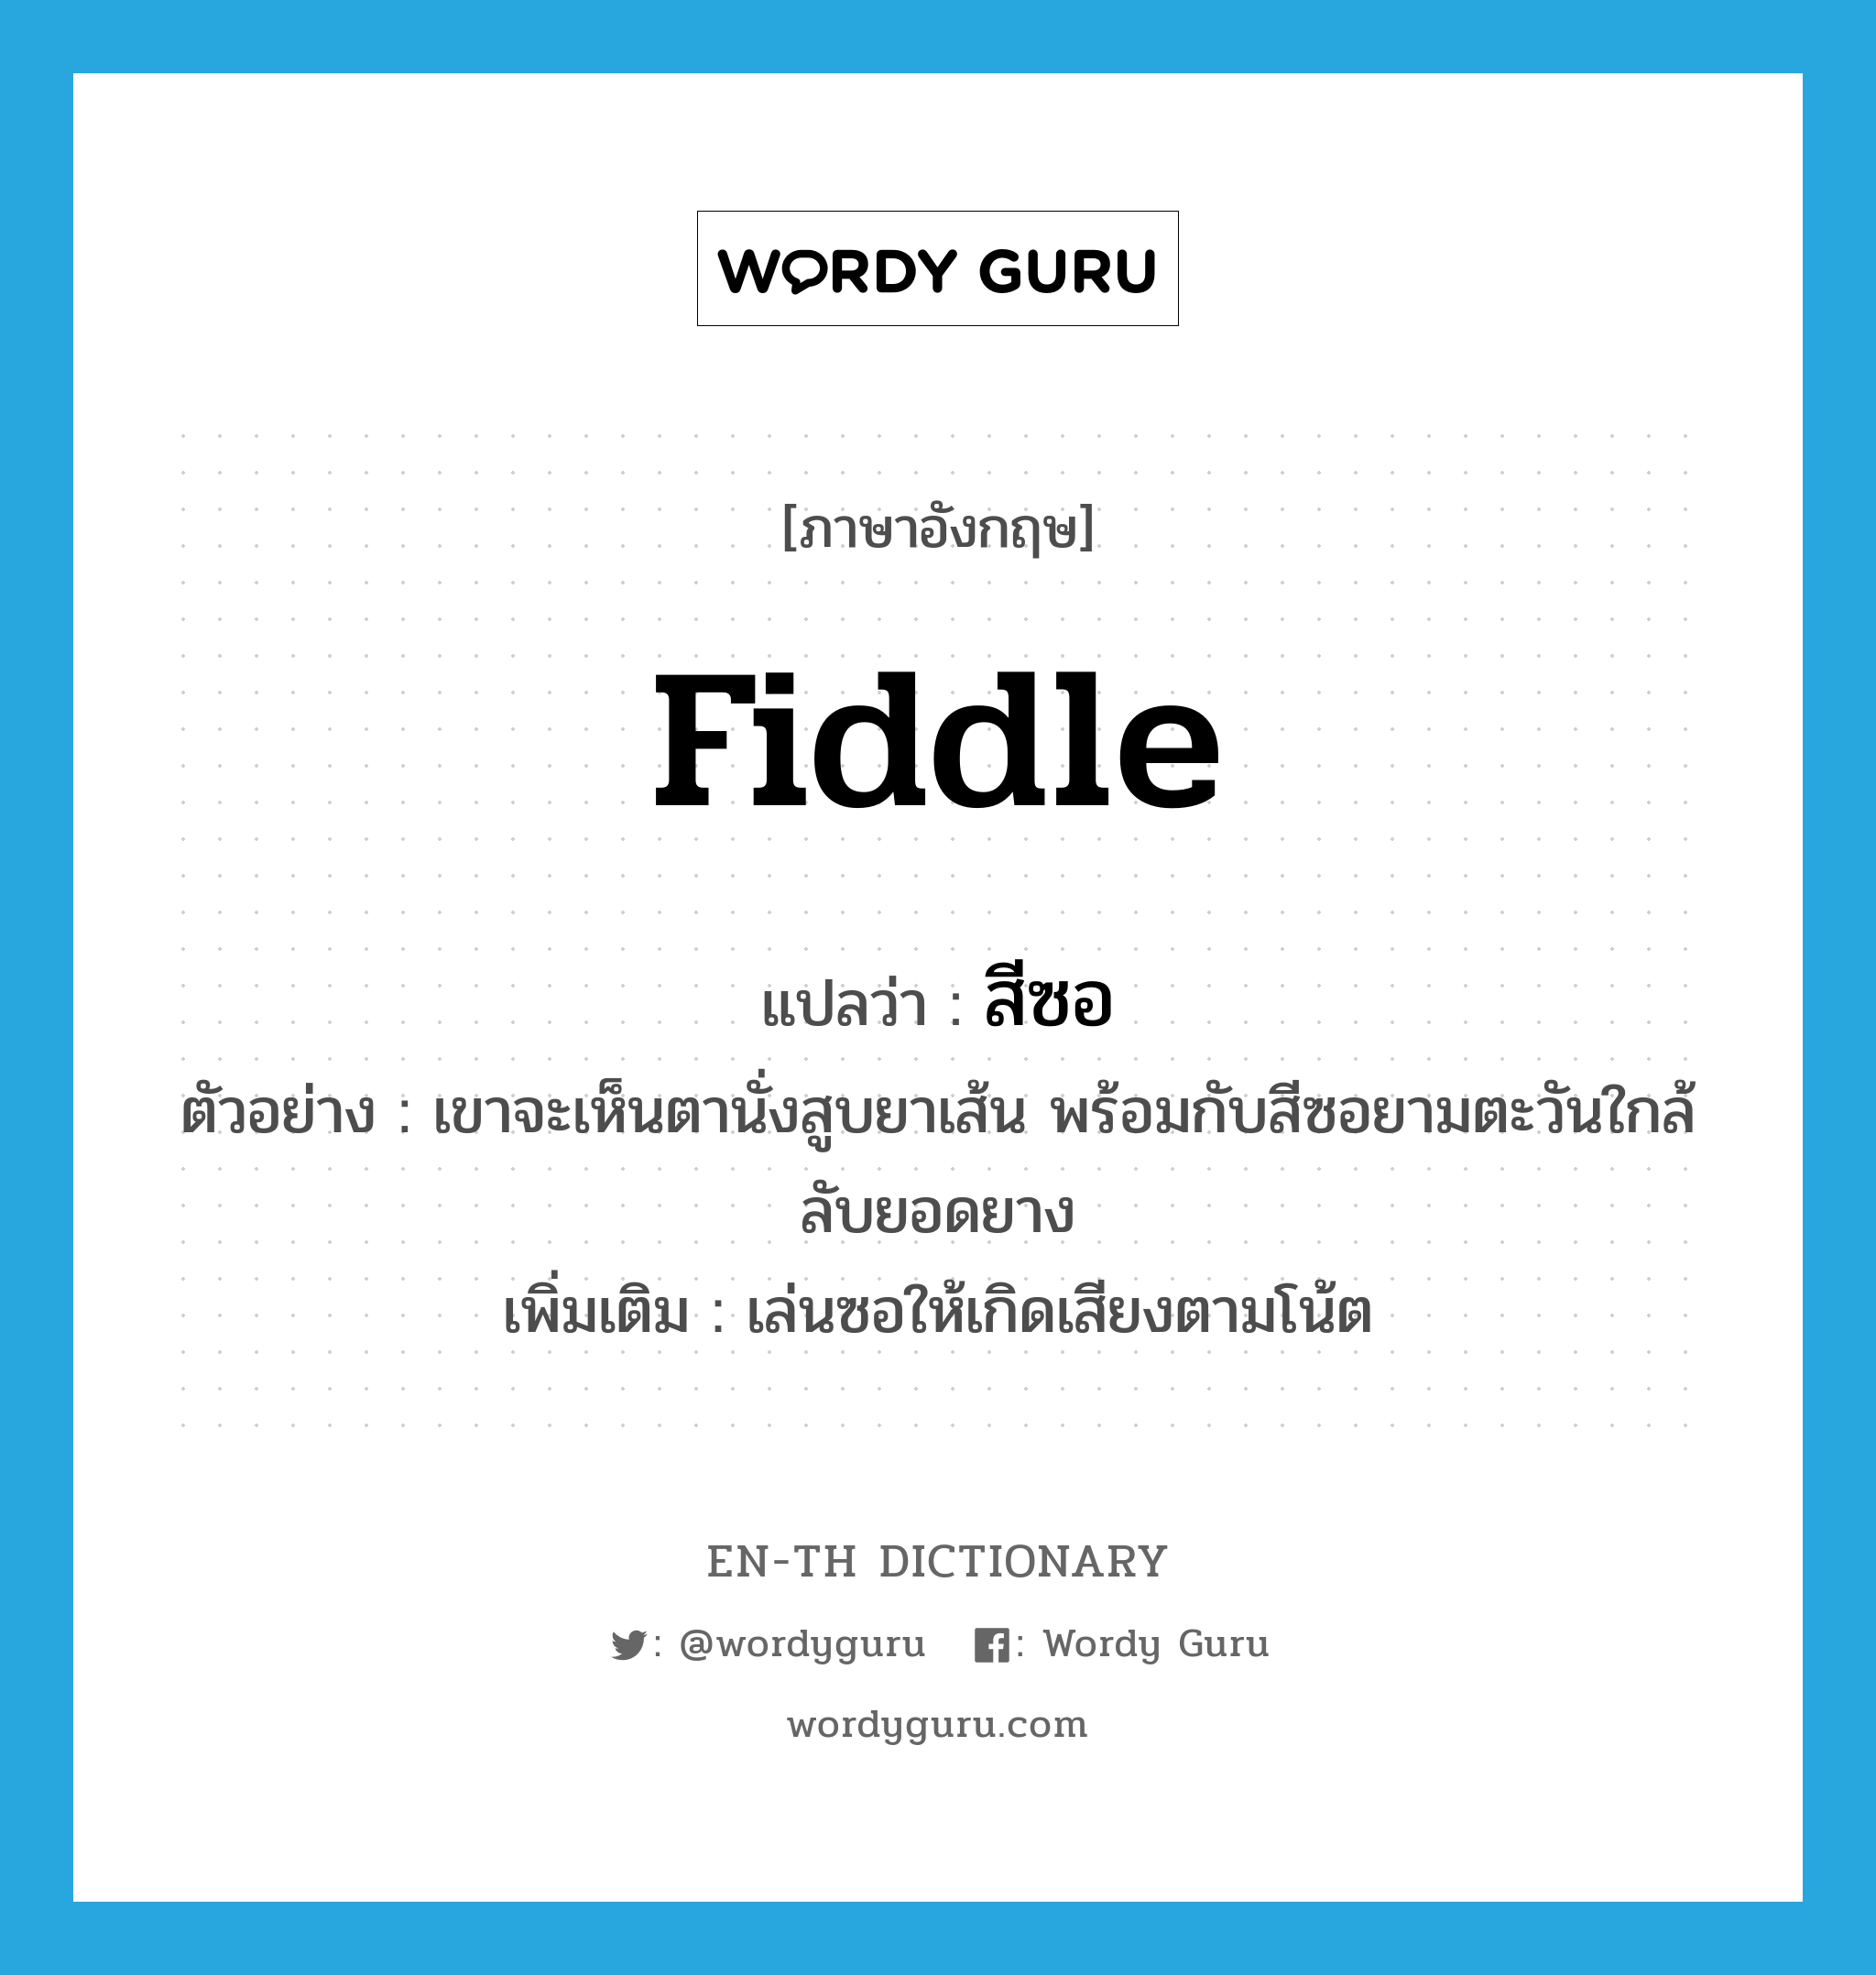 fiddle แปลว่า?, คำศัพท์ภาษาอังกฤษ fiddle แปลว่า สีซอ ประเภท V ตัวอย่าง เขาจะเห็นตานั่งสูบยาเส้น พร้อมกับสีซอยามตะวันใกล้ลับยอดยาง เพิ่มเติม เล่นซอให้เกิดเสียงตามโน้ต หมวด V